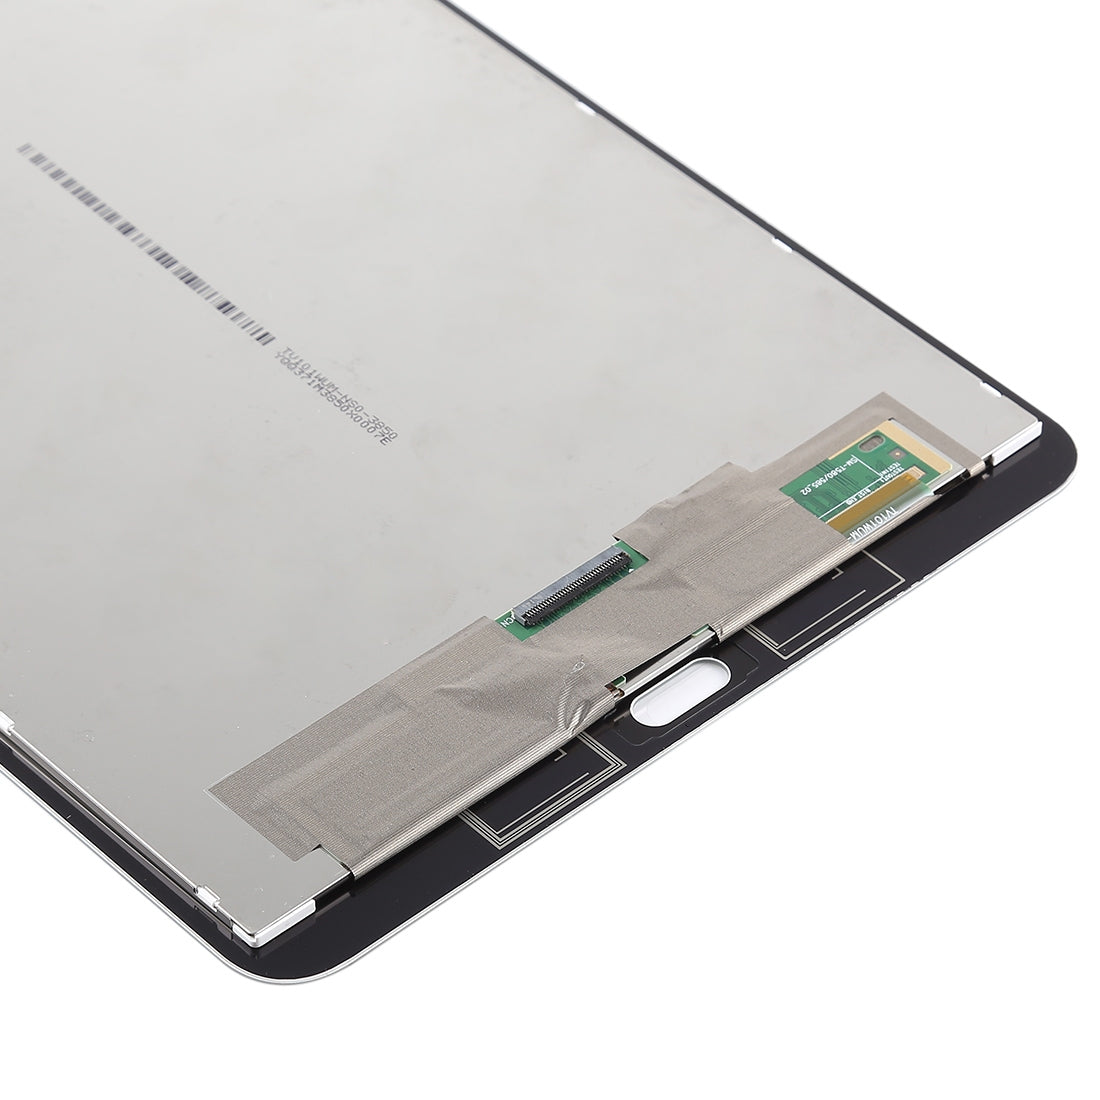 Ecran LCD + Vitre Tactile Samsung Galaxy Tab A 10.1 T580